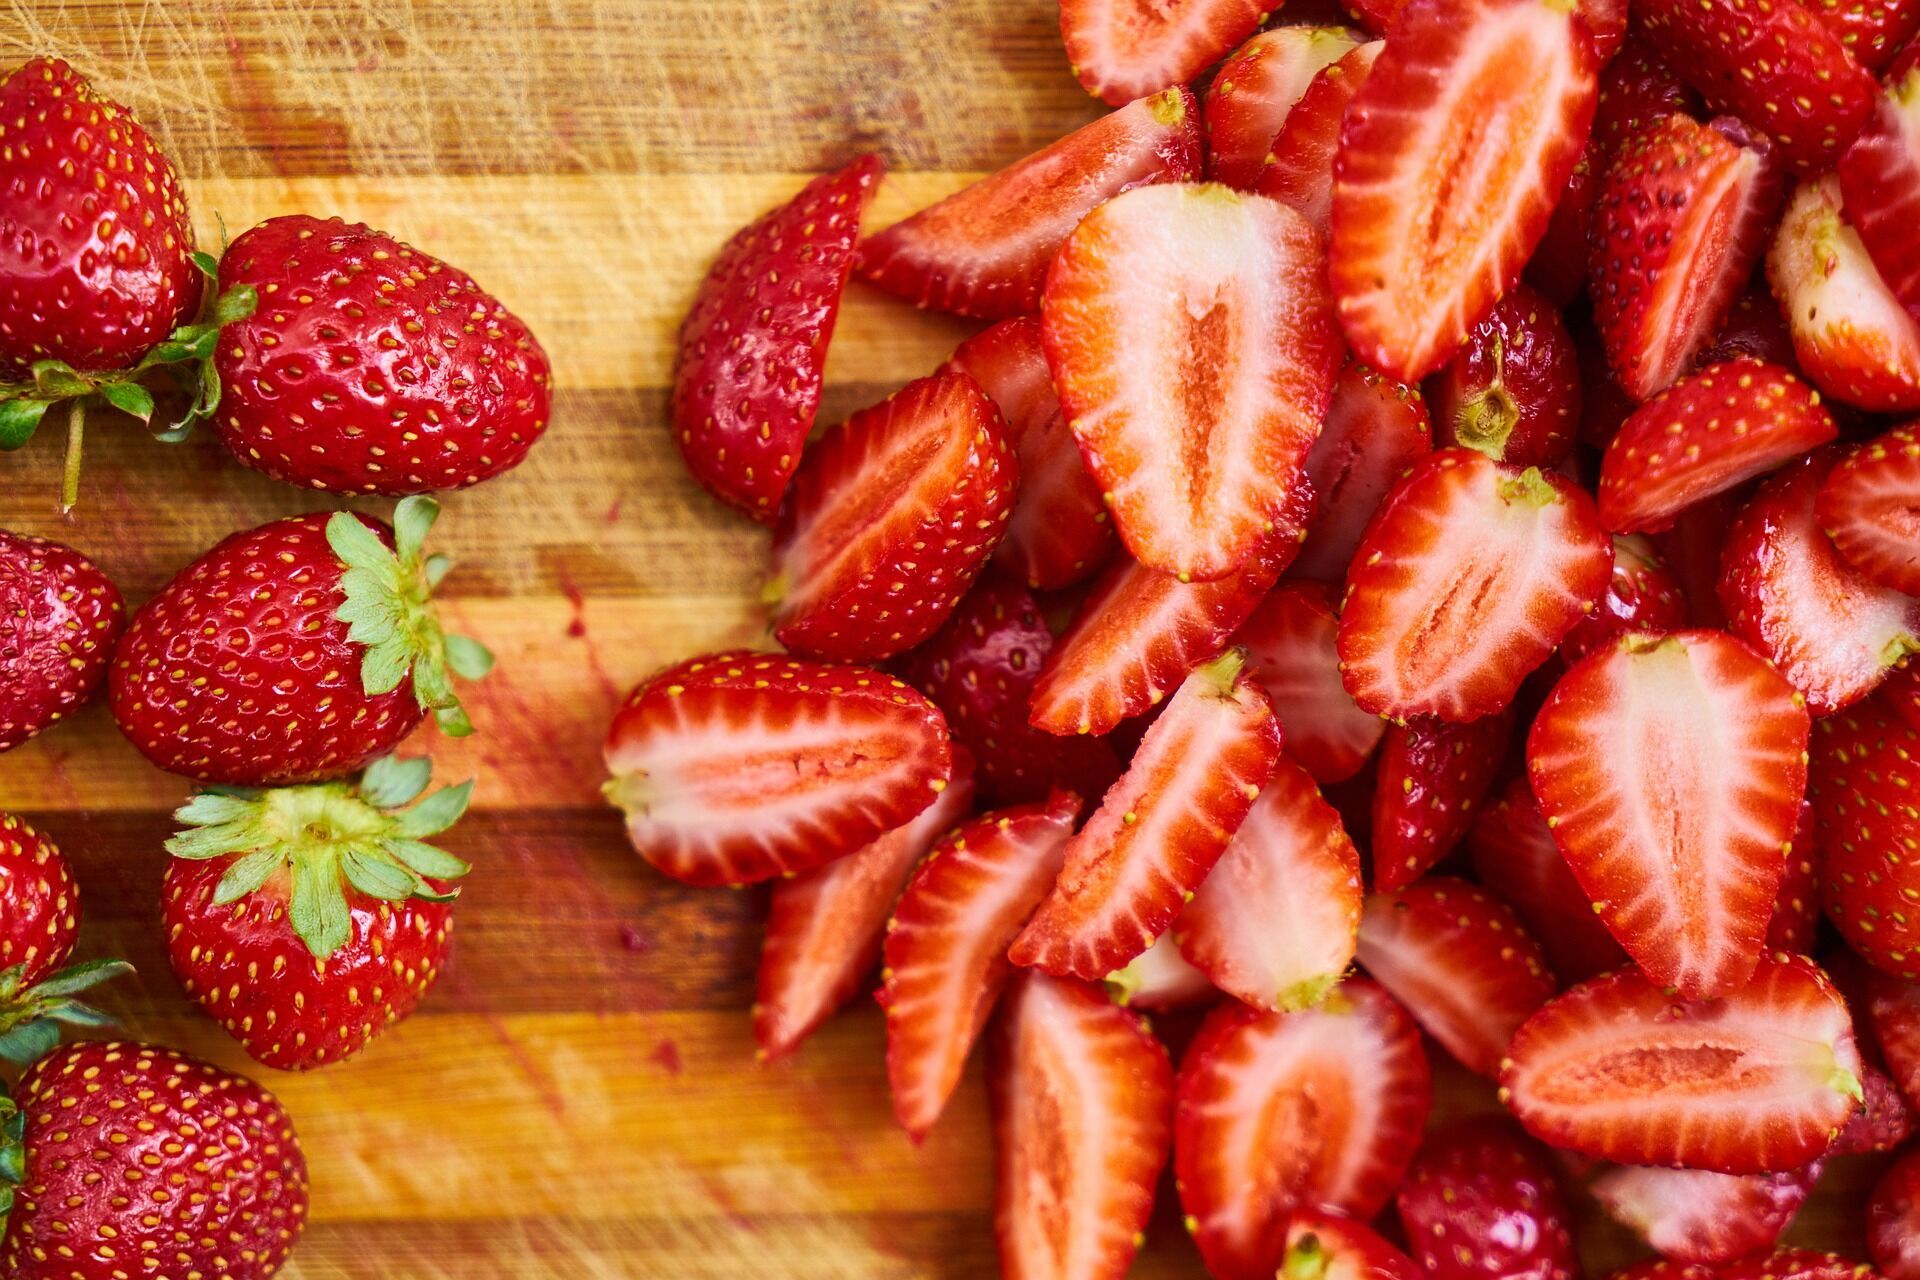 Красные фрукты и ягоды влияют на работу генов, которые замедляют процесс накопления жира